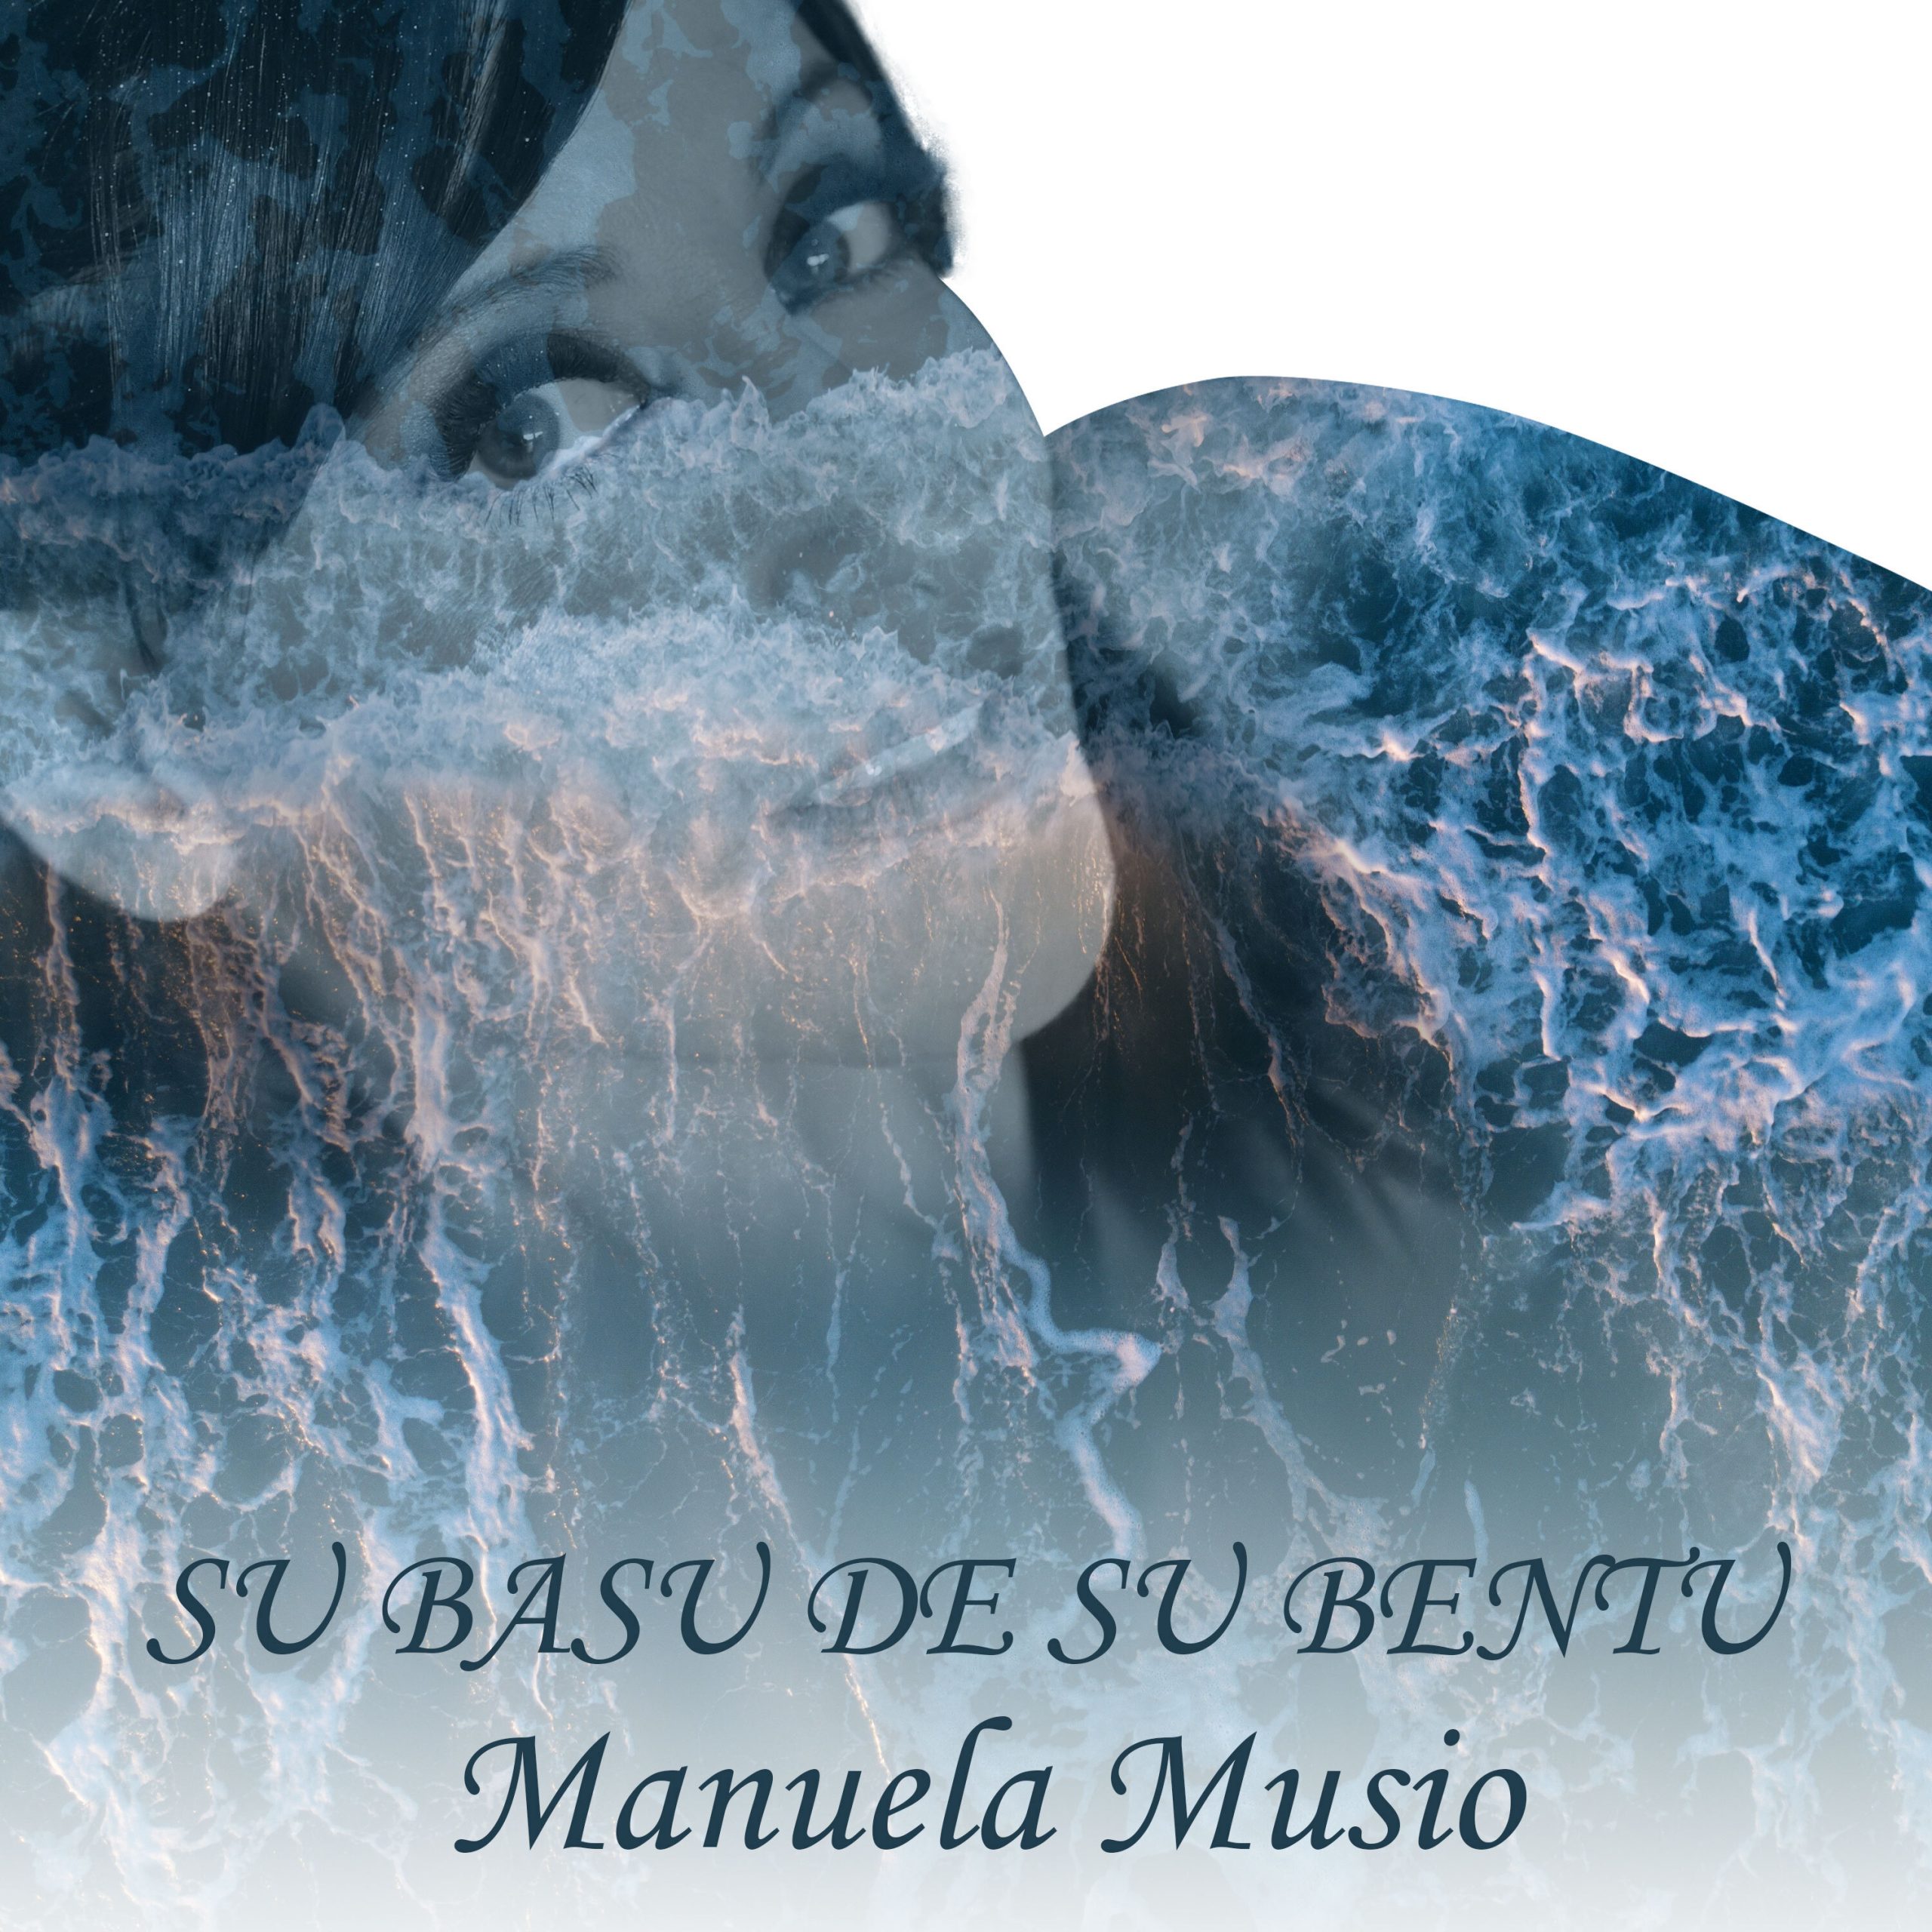 Esce il singolo “Su Basu de su Bentu”, della cantautrice sarda Manuela Musio